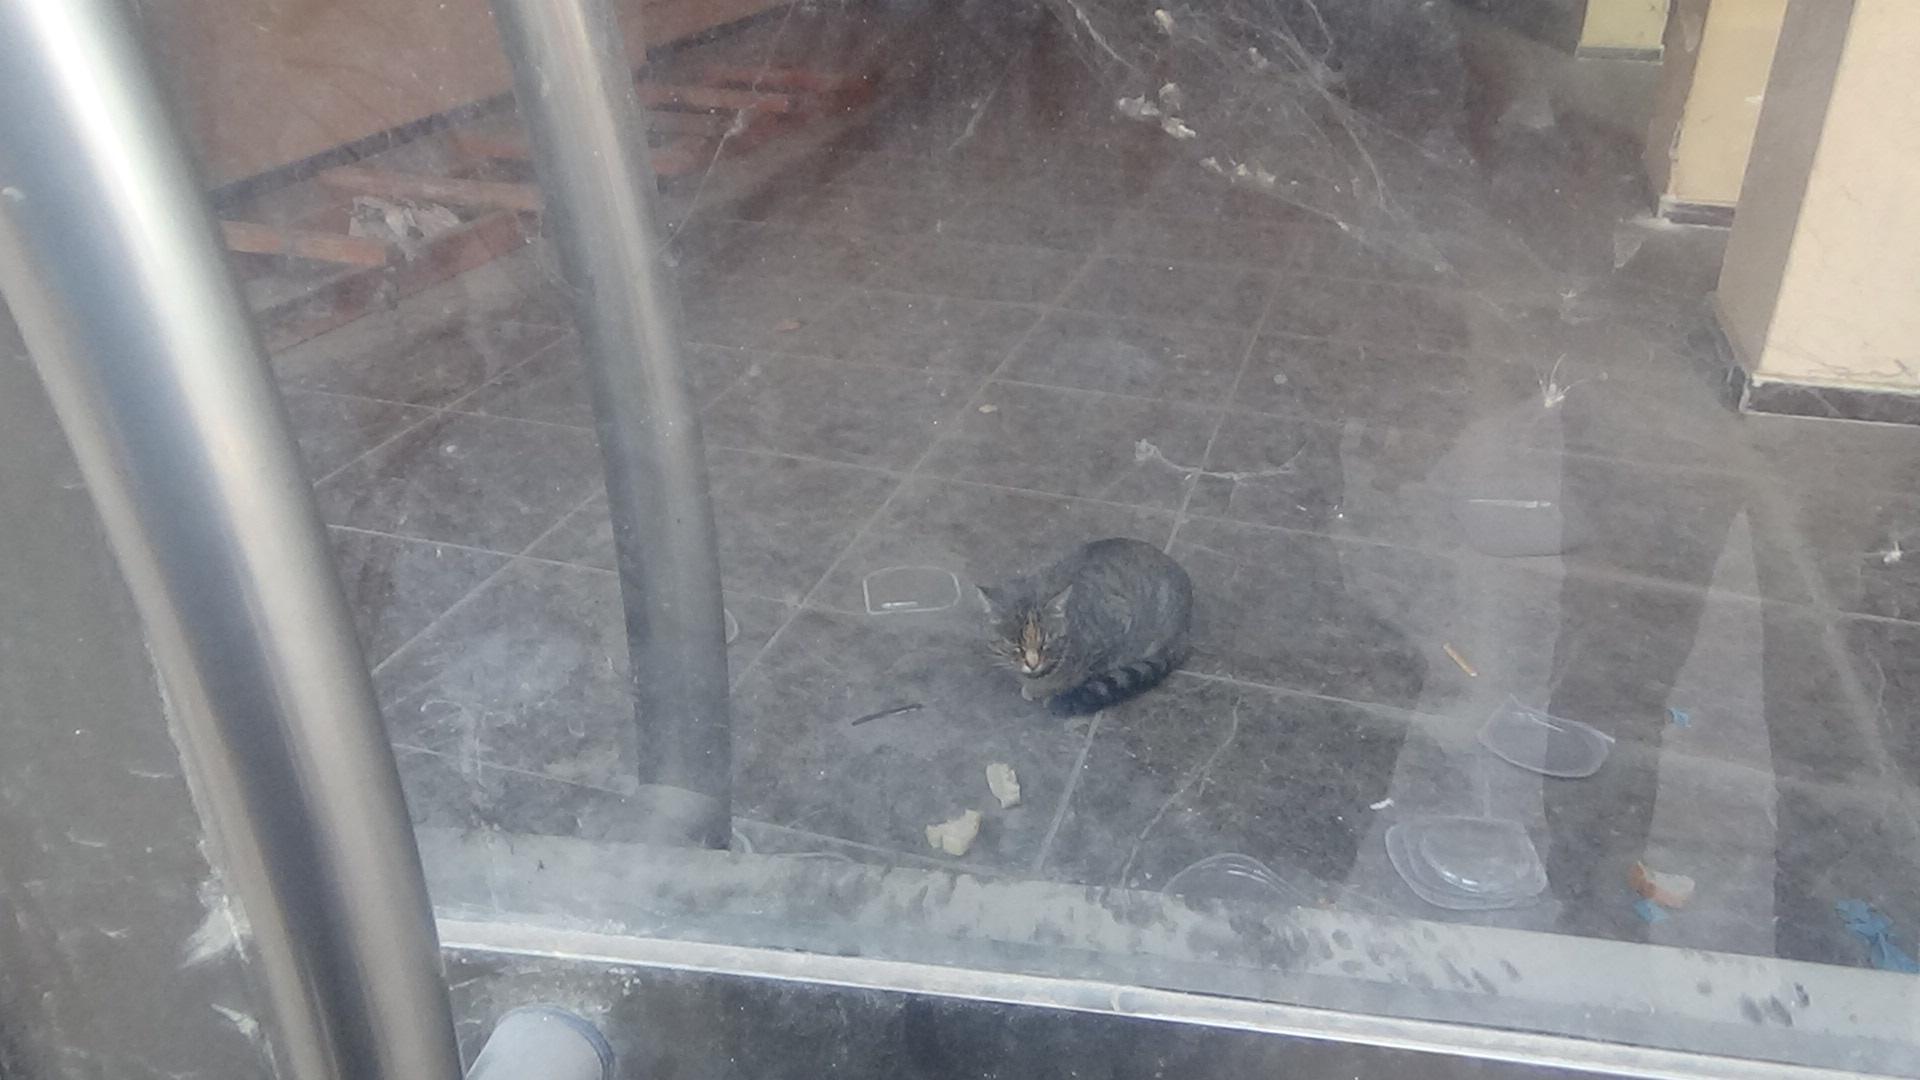 İş yerinde mahsur kalan kedi, kapı altından besleniyor